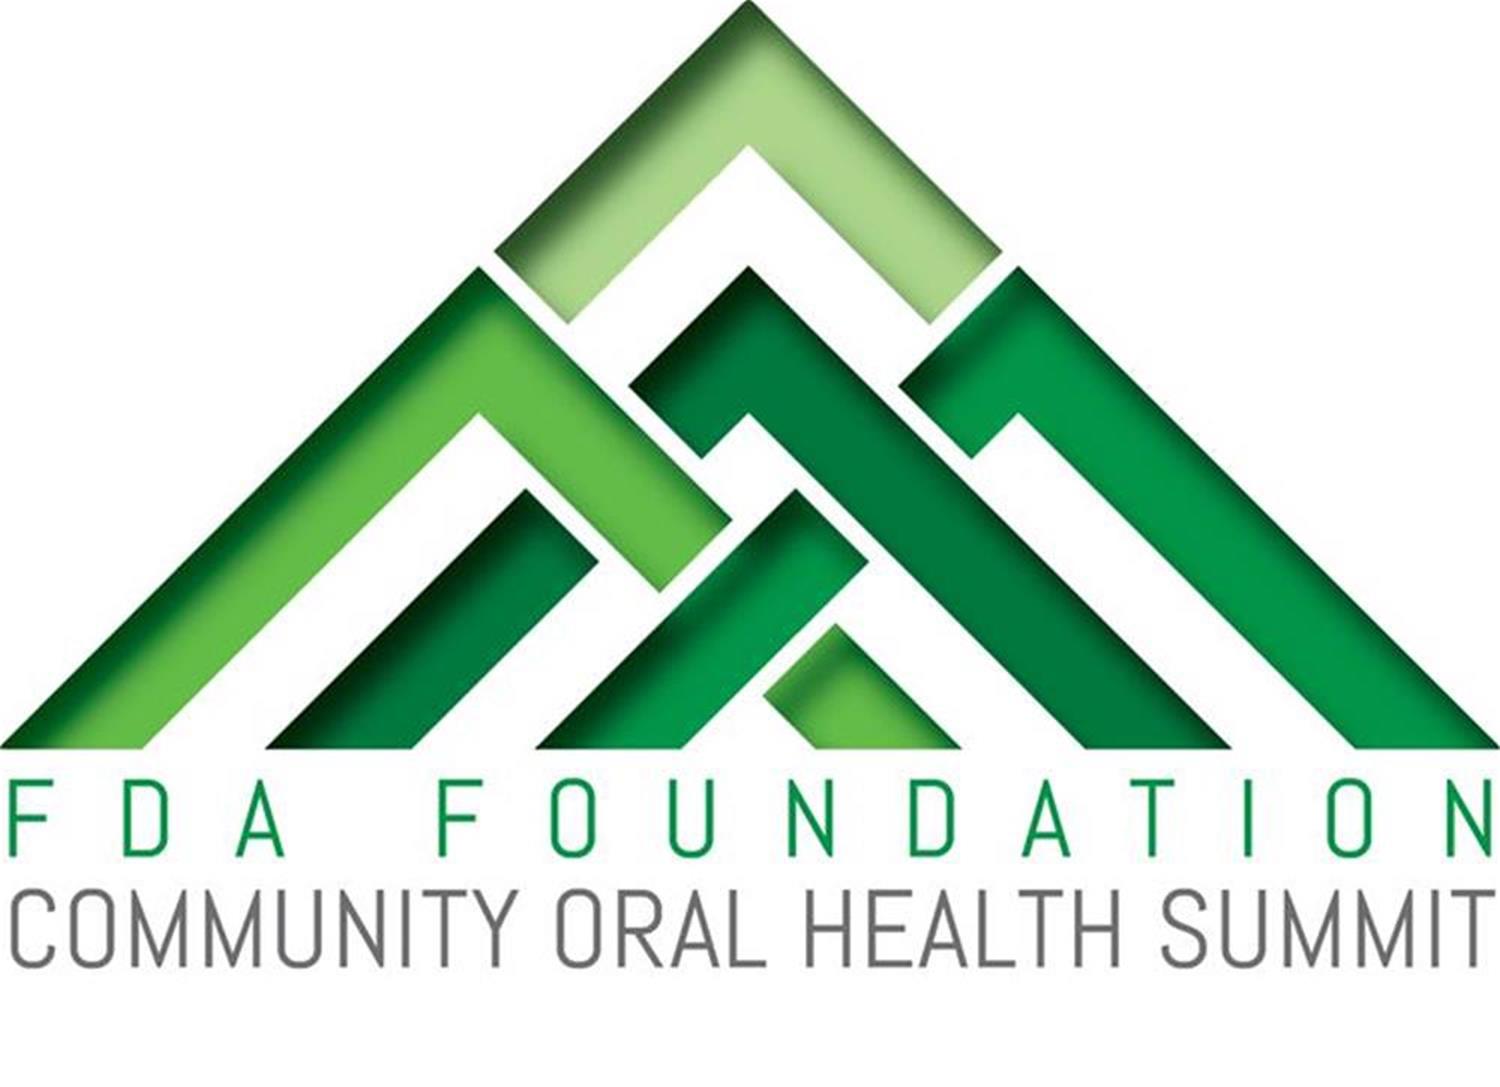 FDA Foundation Community Oral Health Summit